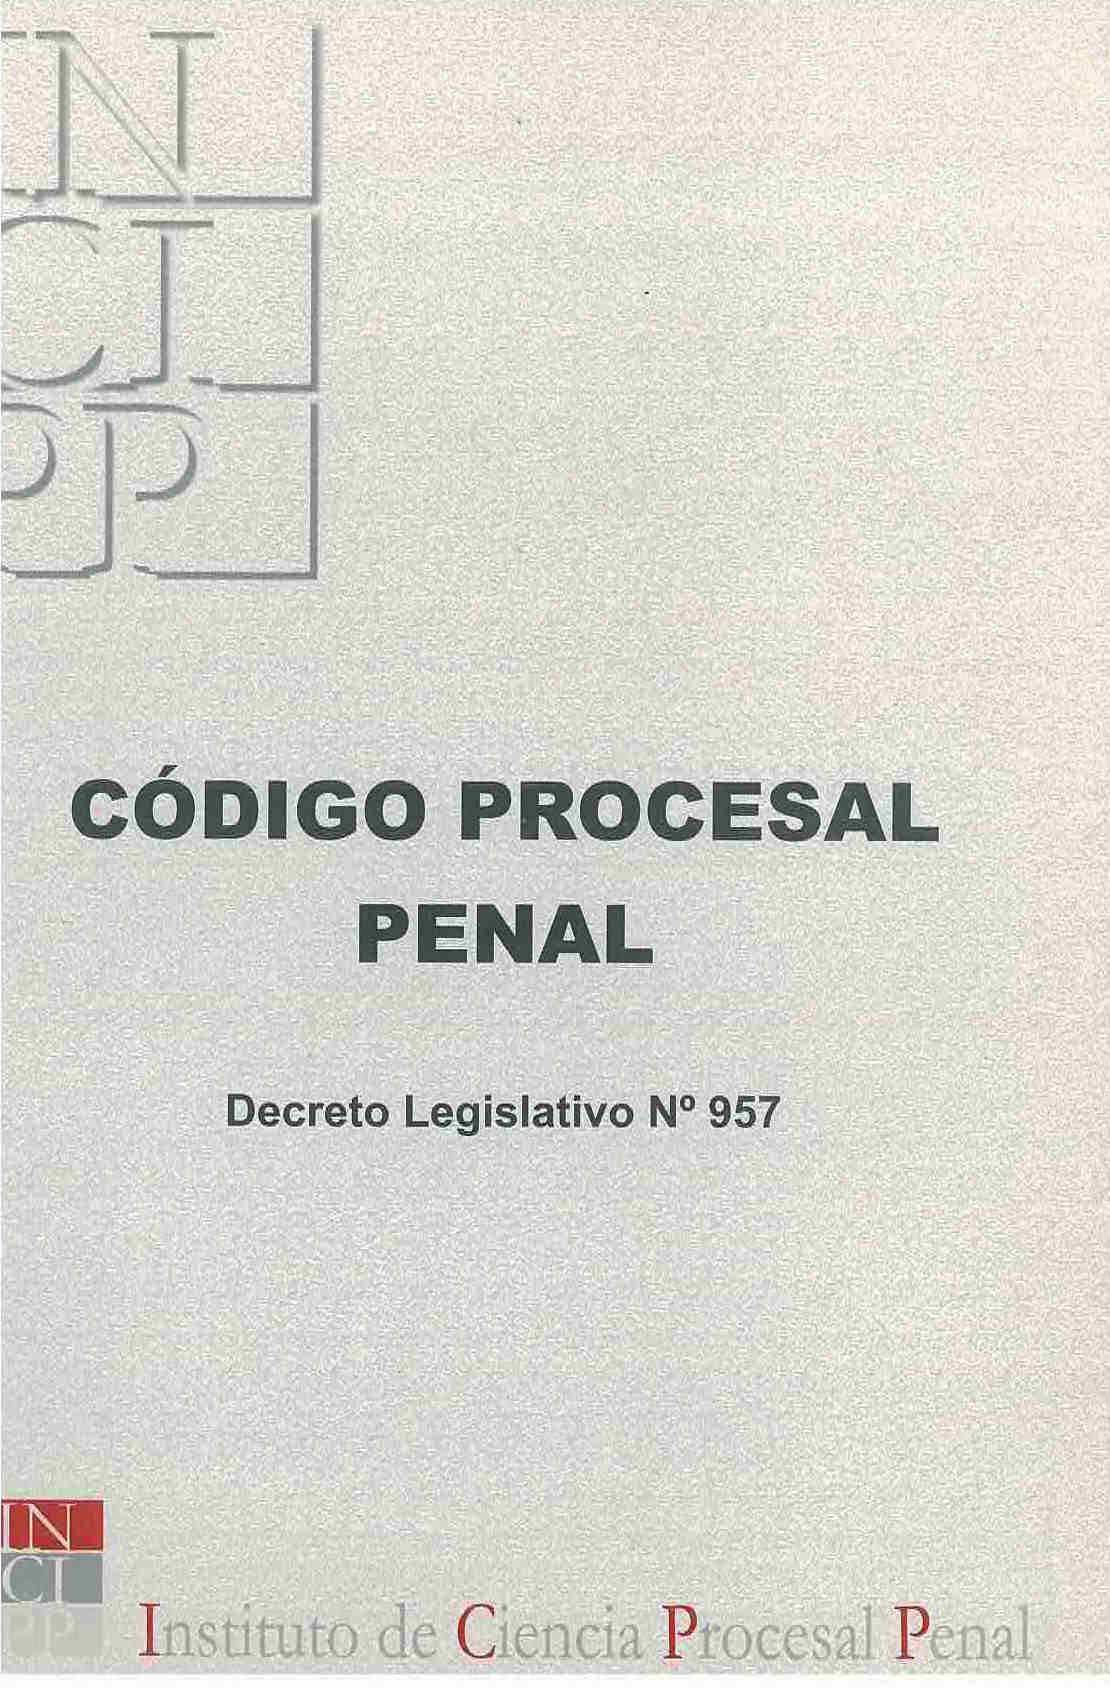 Código procesal penal.  Decreto legislativo N°957